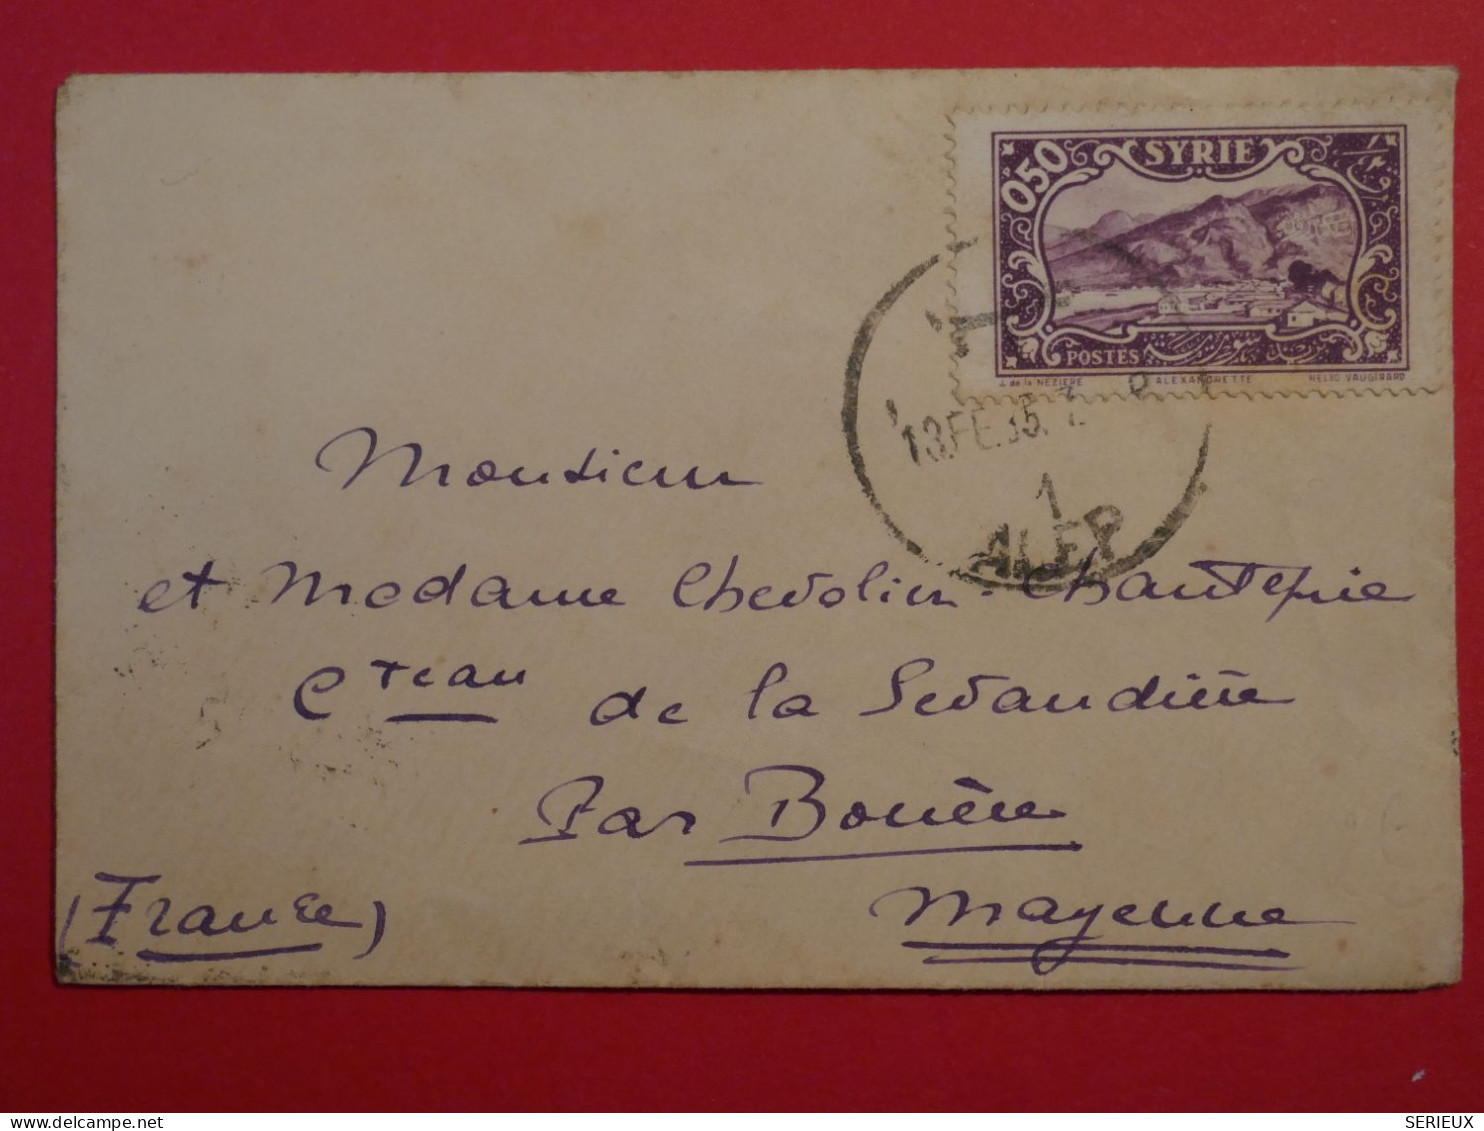 BP 15 SYRIE  BELLE LETTRE  1935 ALEP AU CHATEAU DE SEVANDIERE  FRANCE +  +AFFR. INTERESSANT++ - Covers & Documents